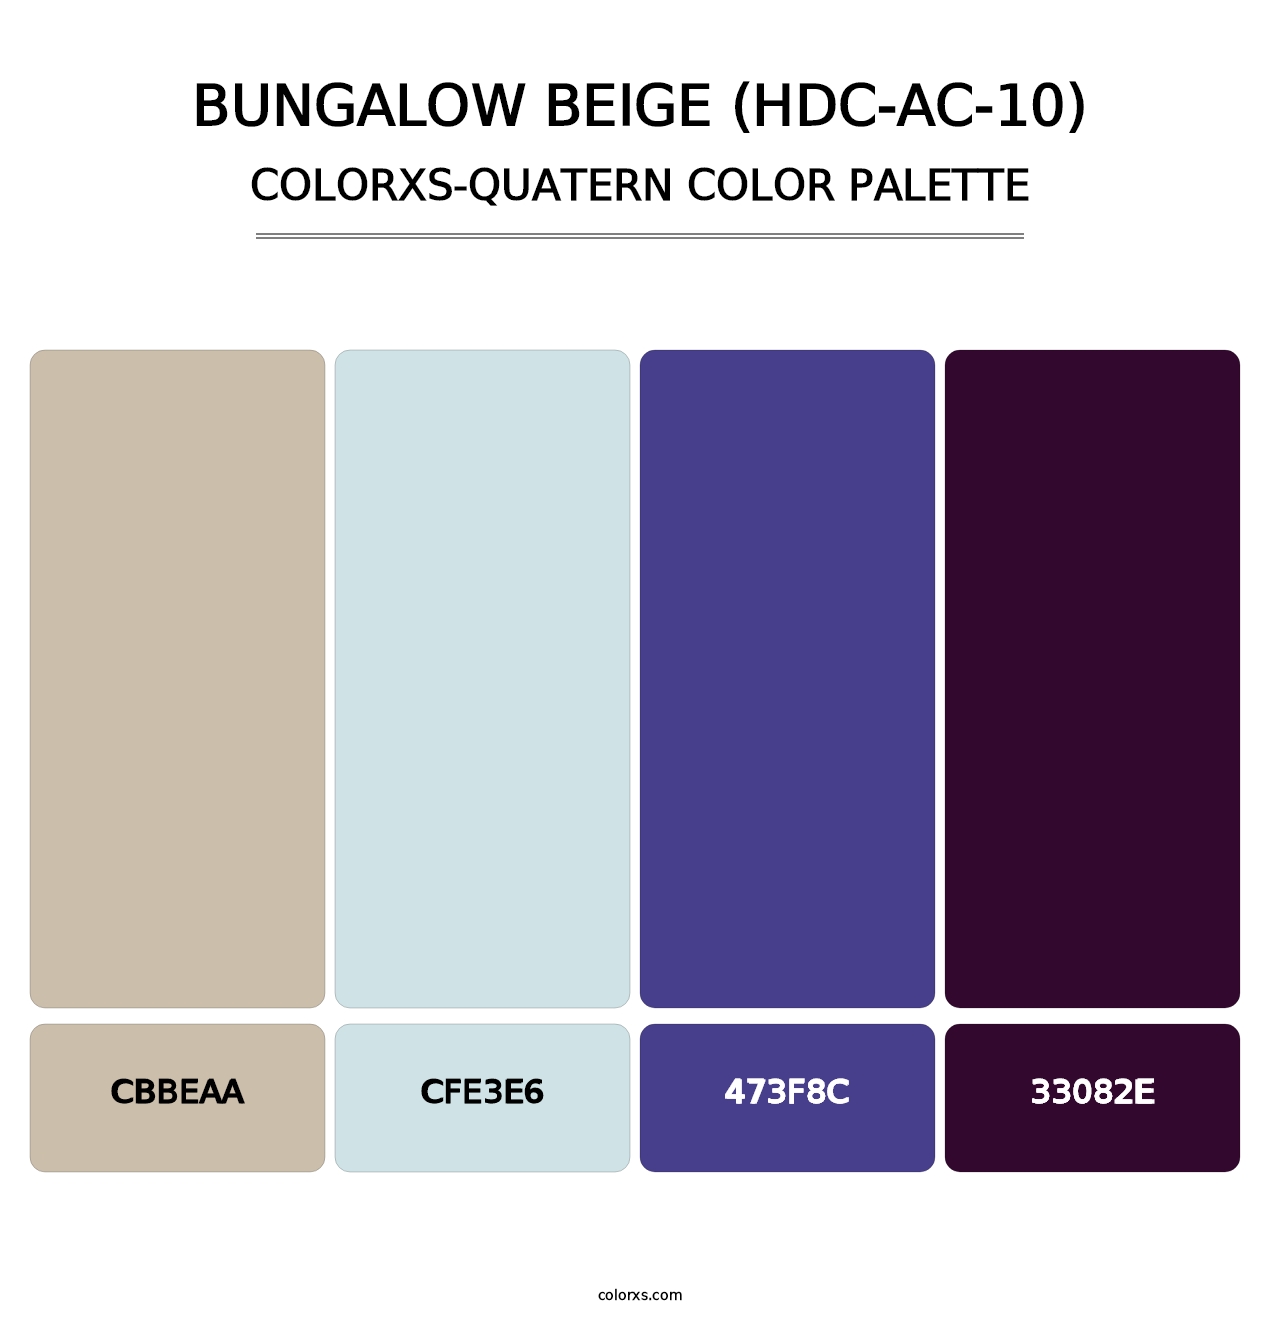 Bungalow Beige (HDC-AC-10) - Colorxs Quatern Palette